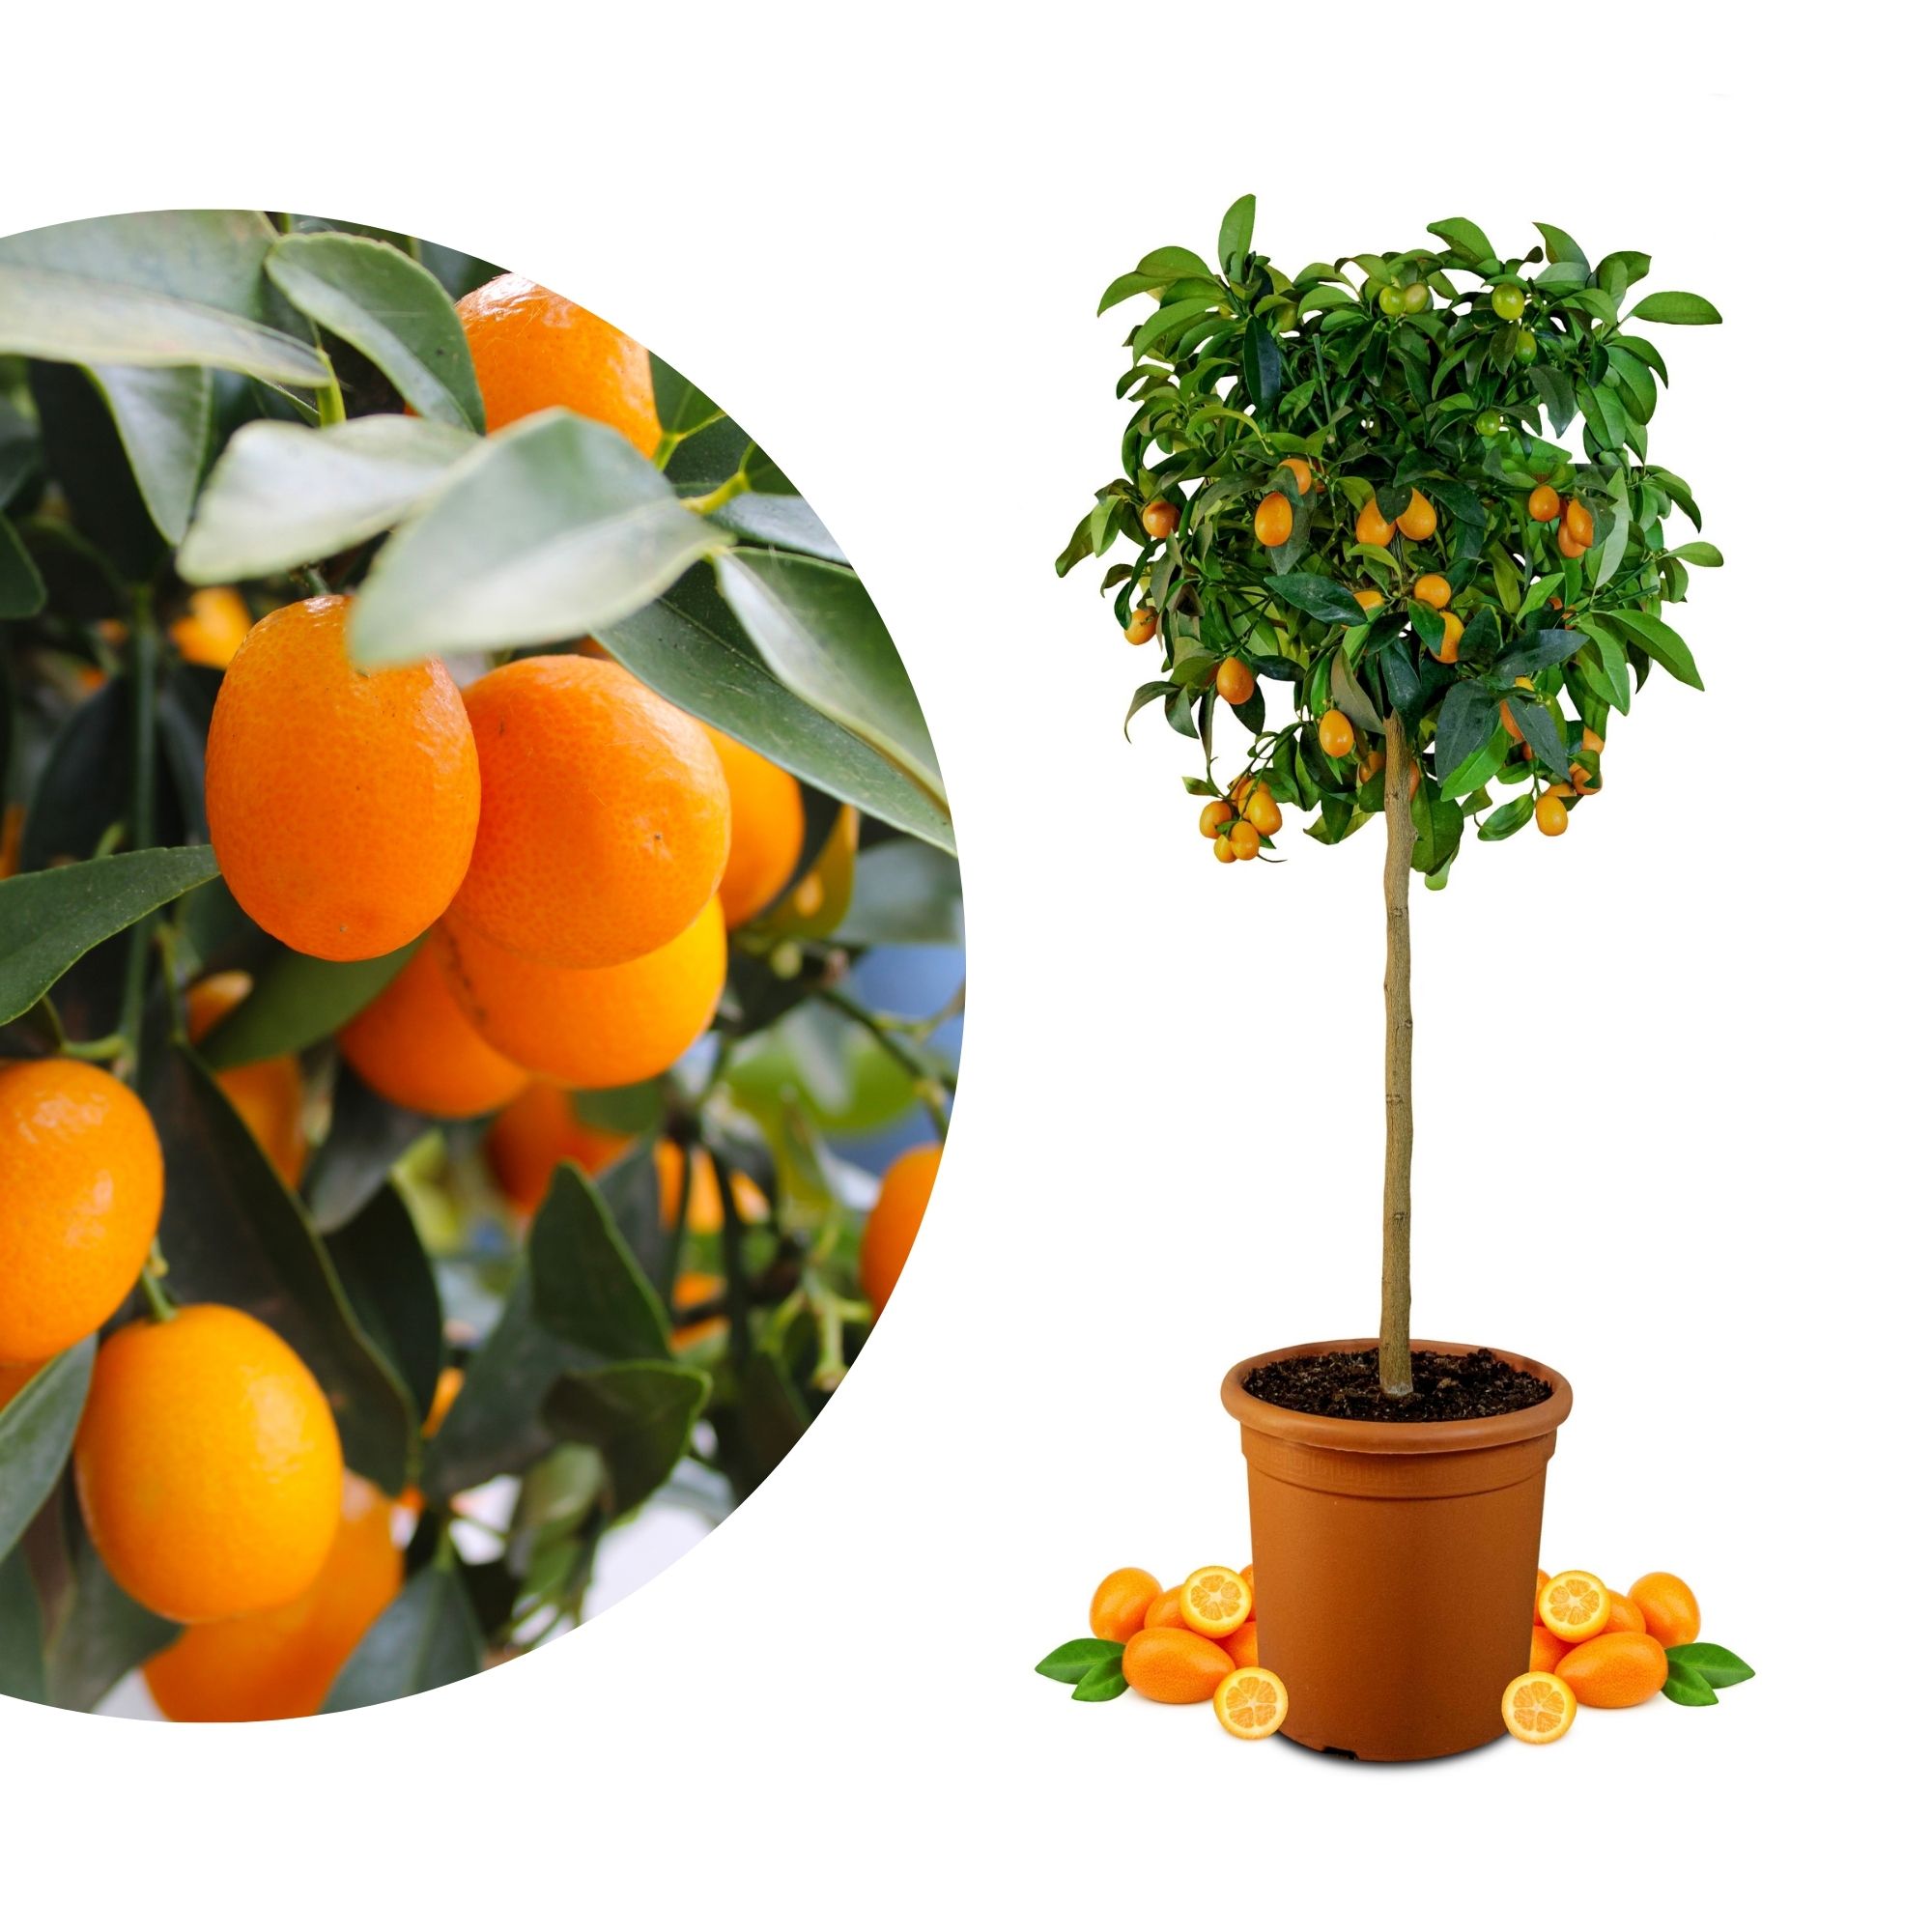 Kumquat [Grande]  - Citrus japonica - Fortunella margarita